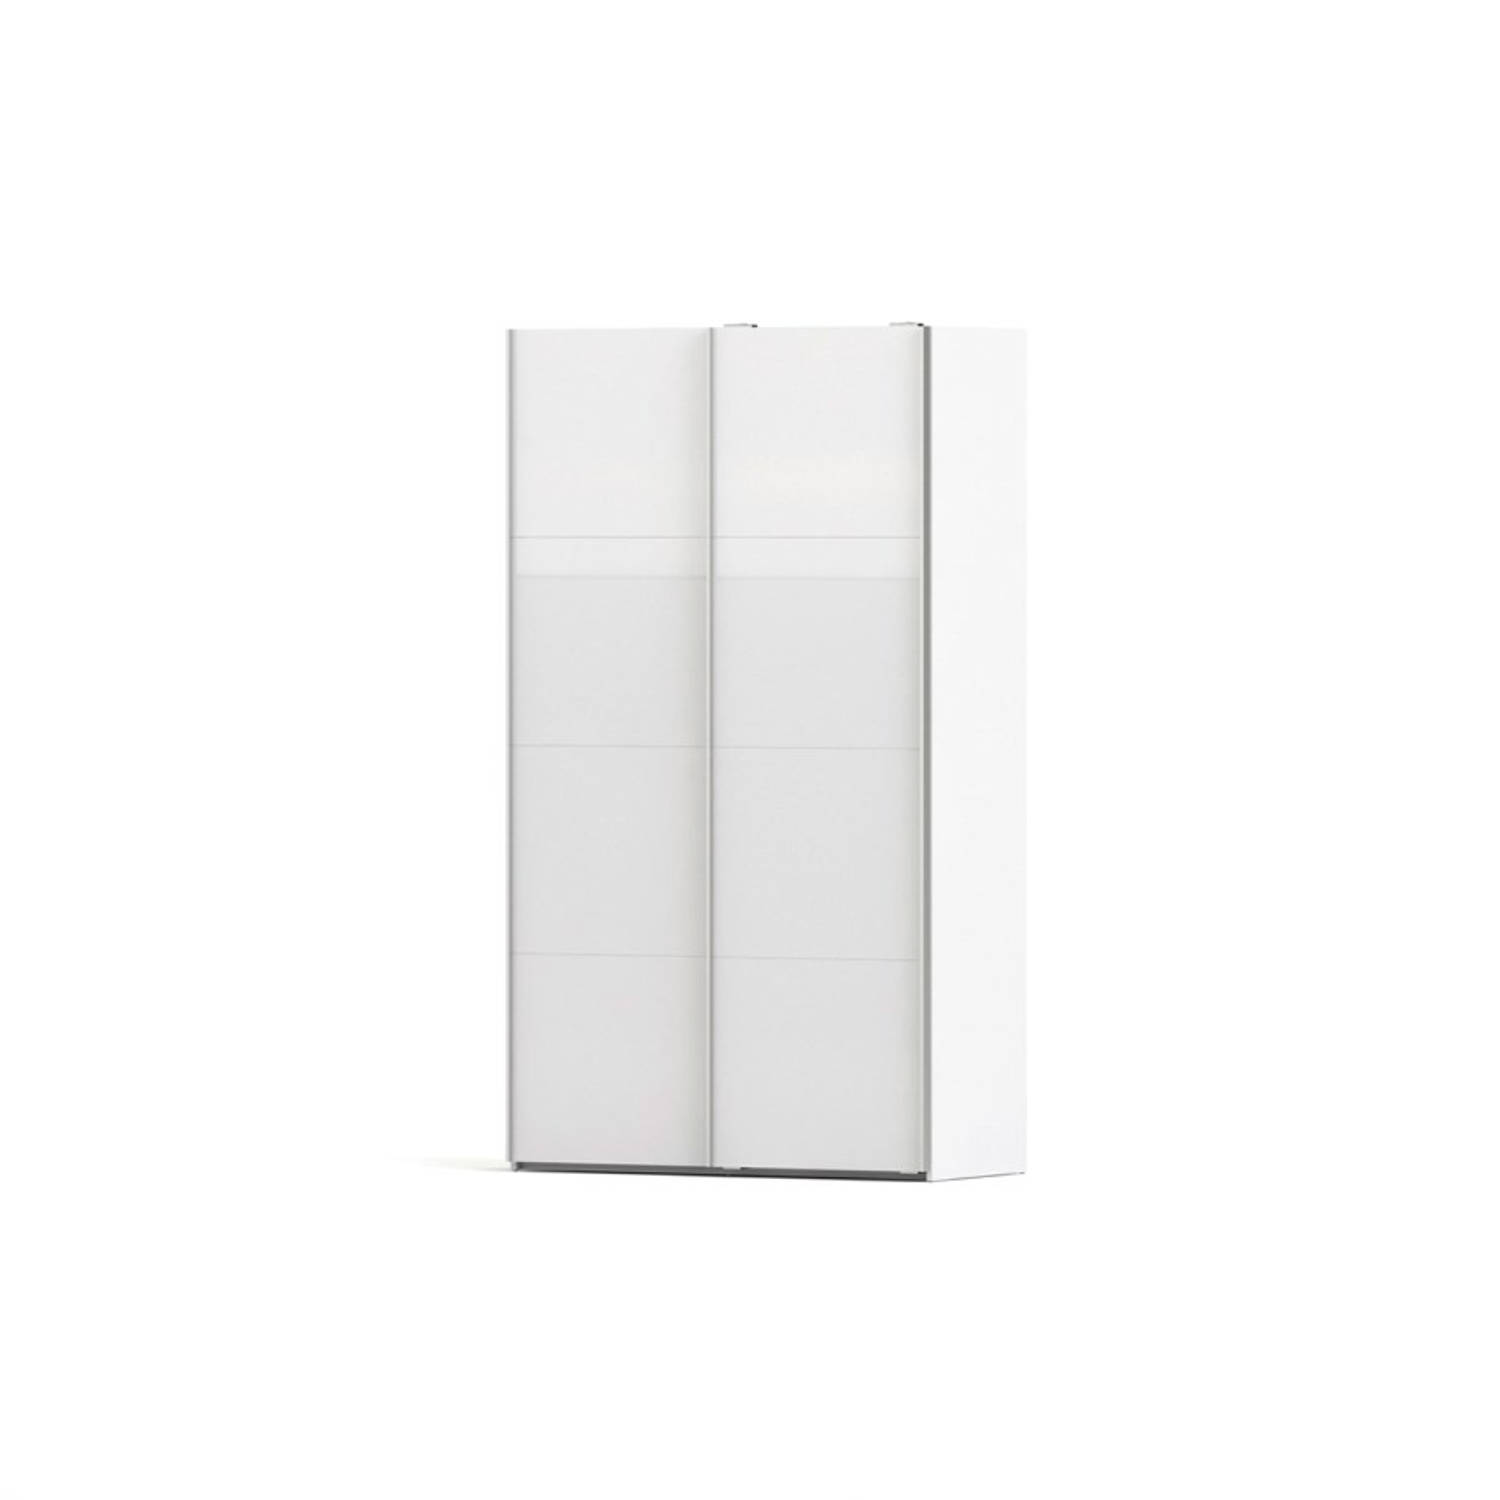 Hioshop Veto kledingkast A 2 deurs H220 cm x B122 cm wit, wit